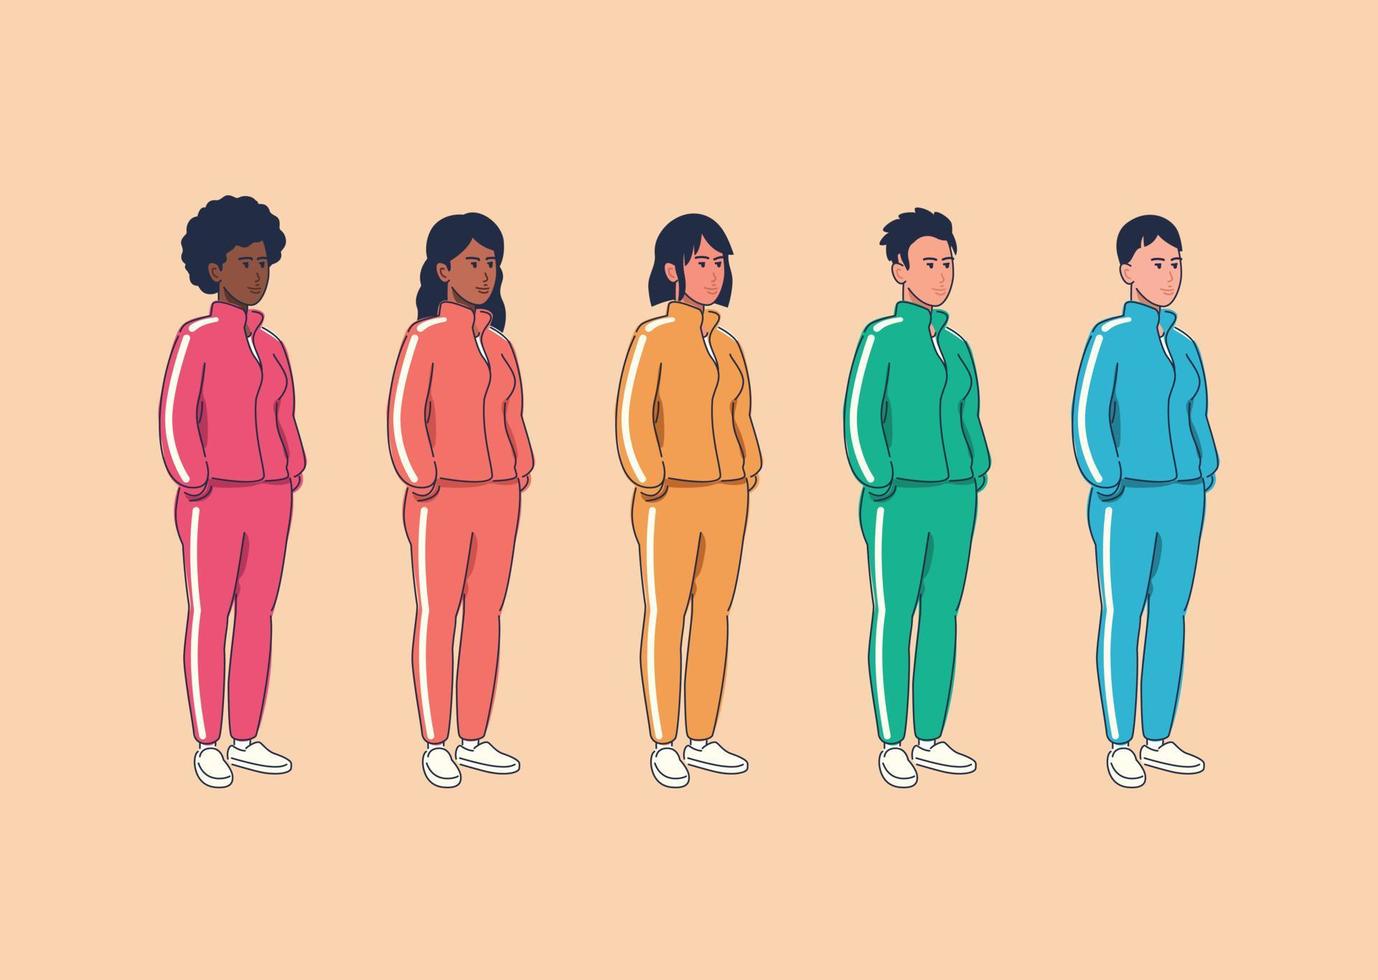 gruppo eterogeneo di donne in tuta. set vettoriale di femmine multirazziali in pantaloni e giacche sportive a colori, illustrazione dei personaggi.